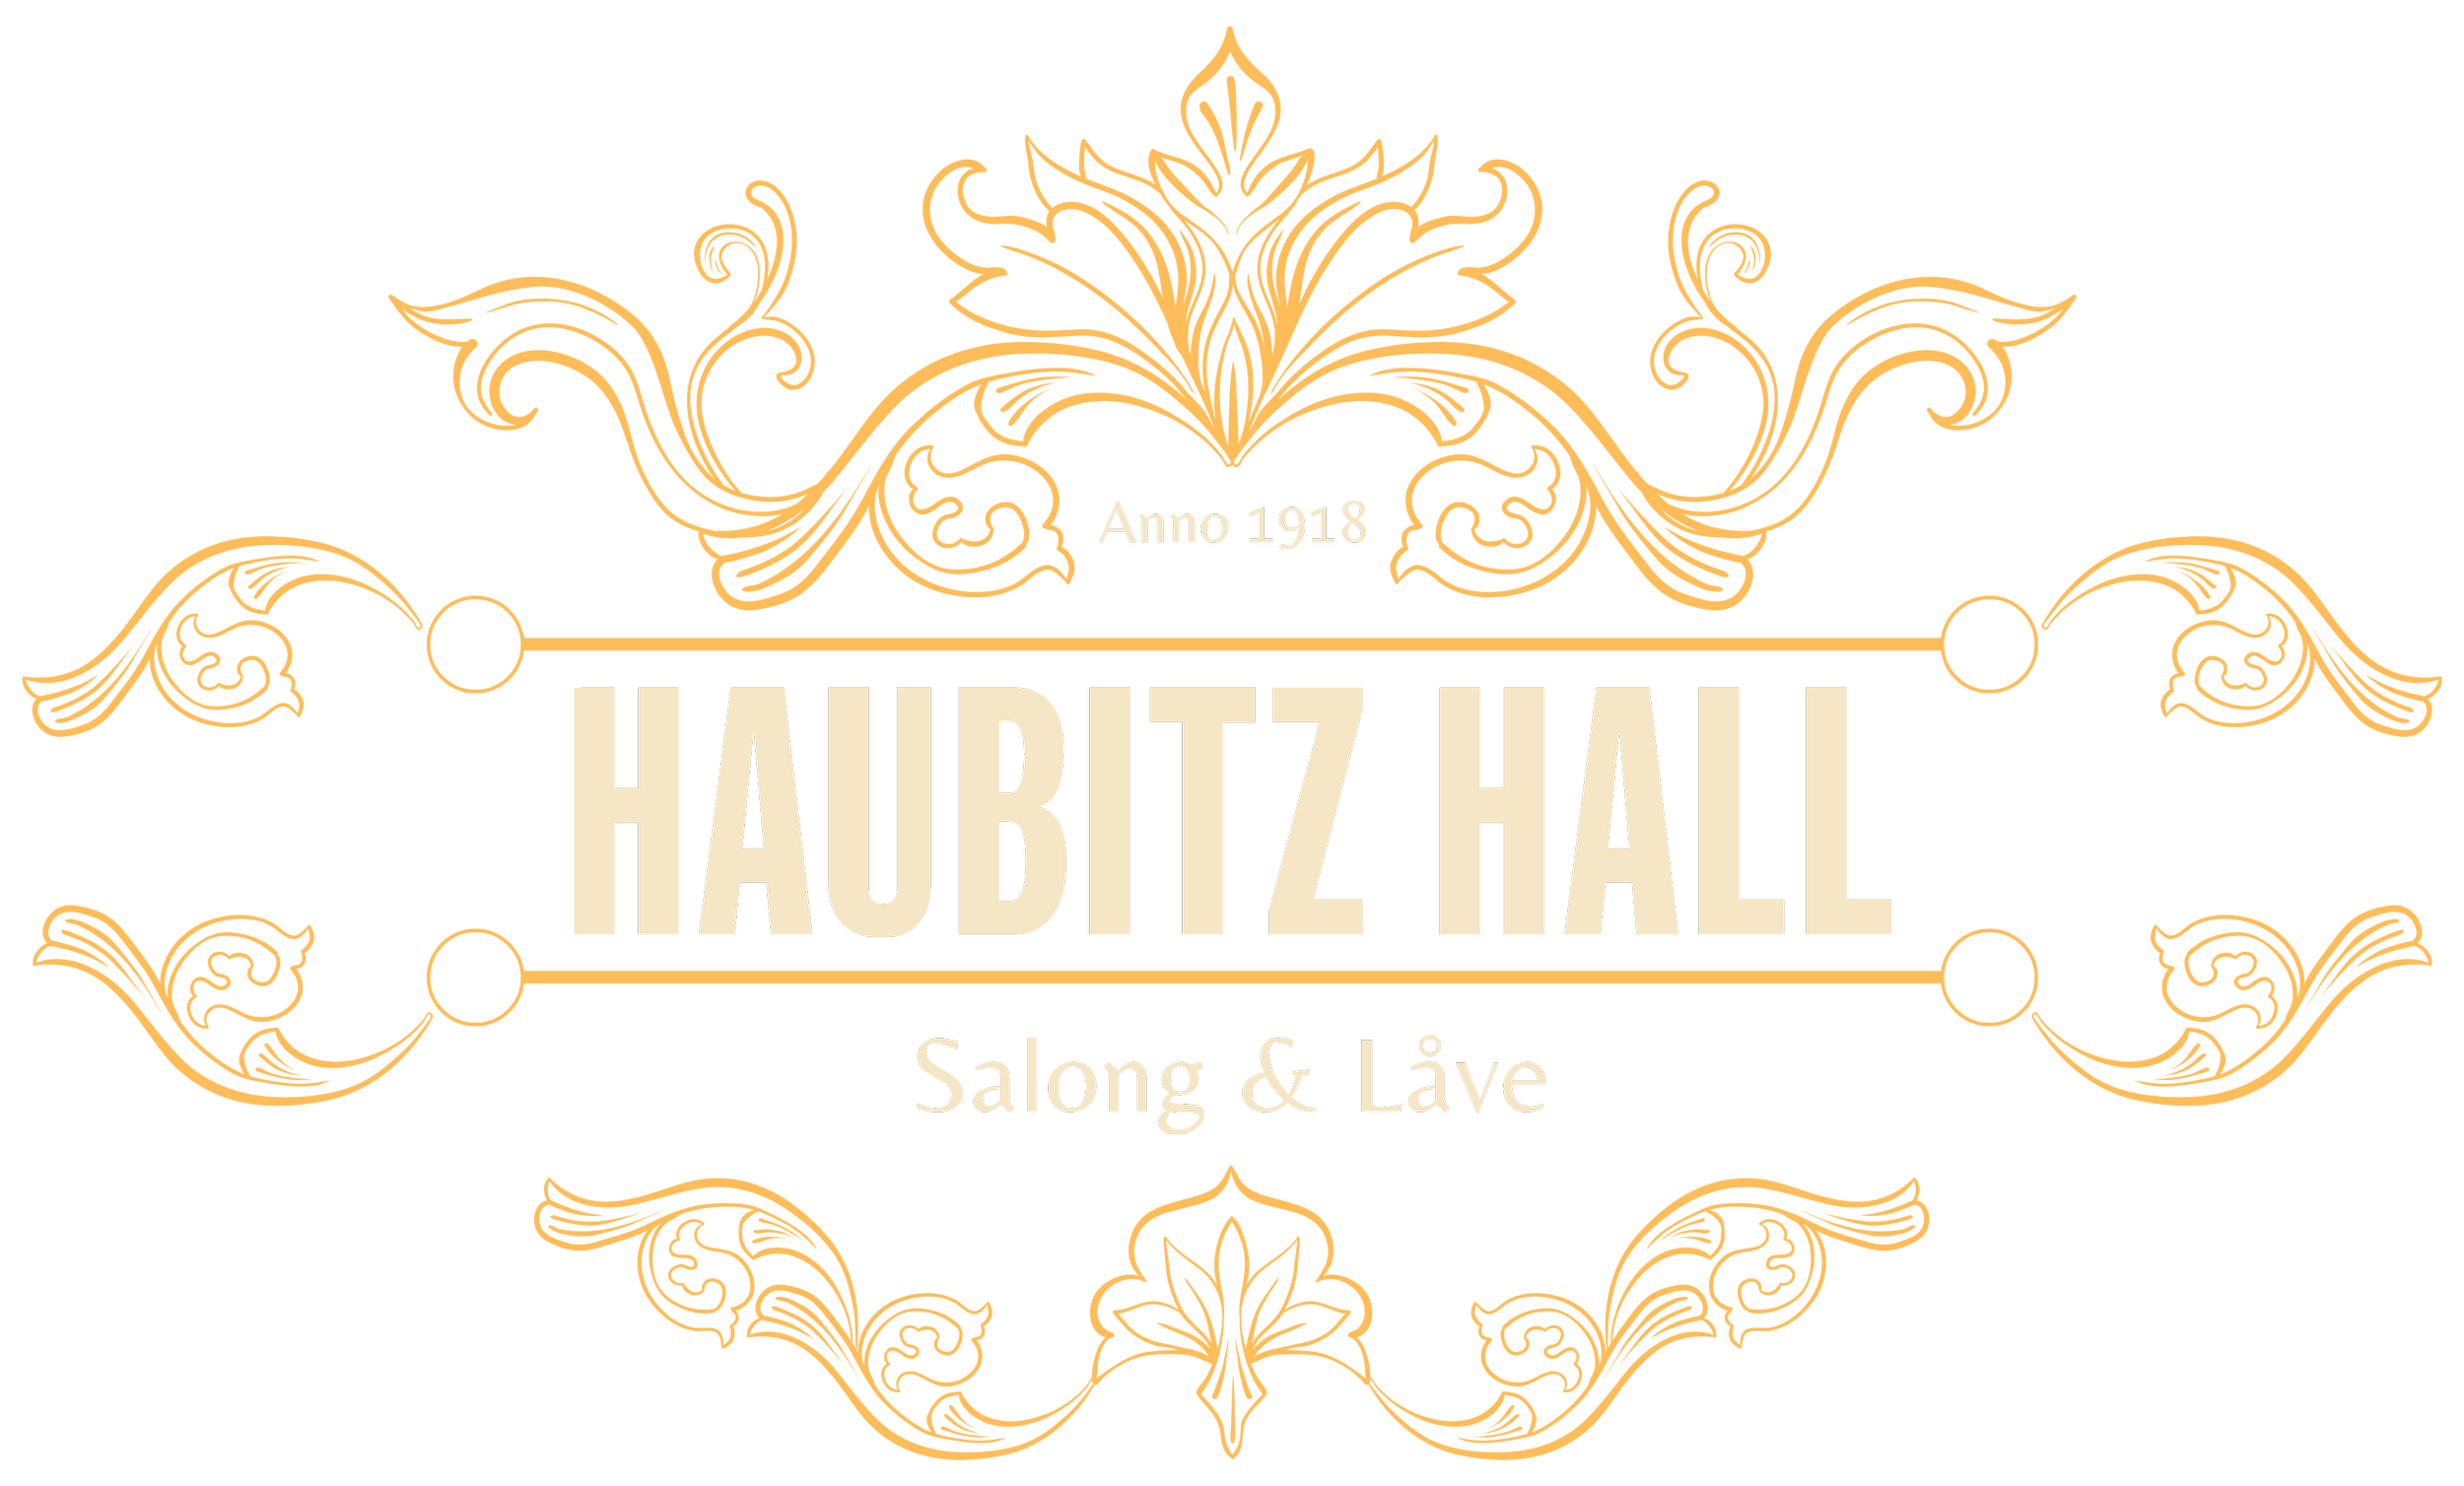 Haubitz Hall